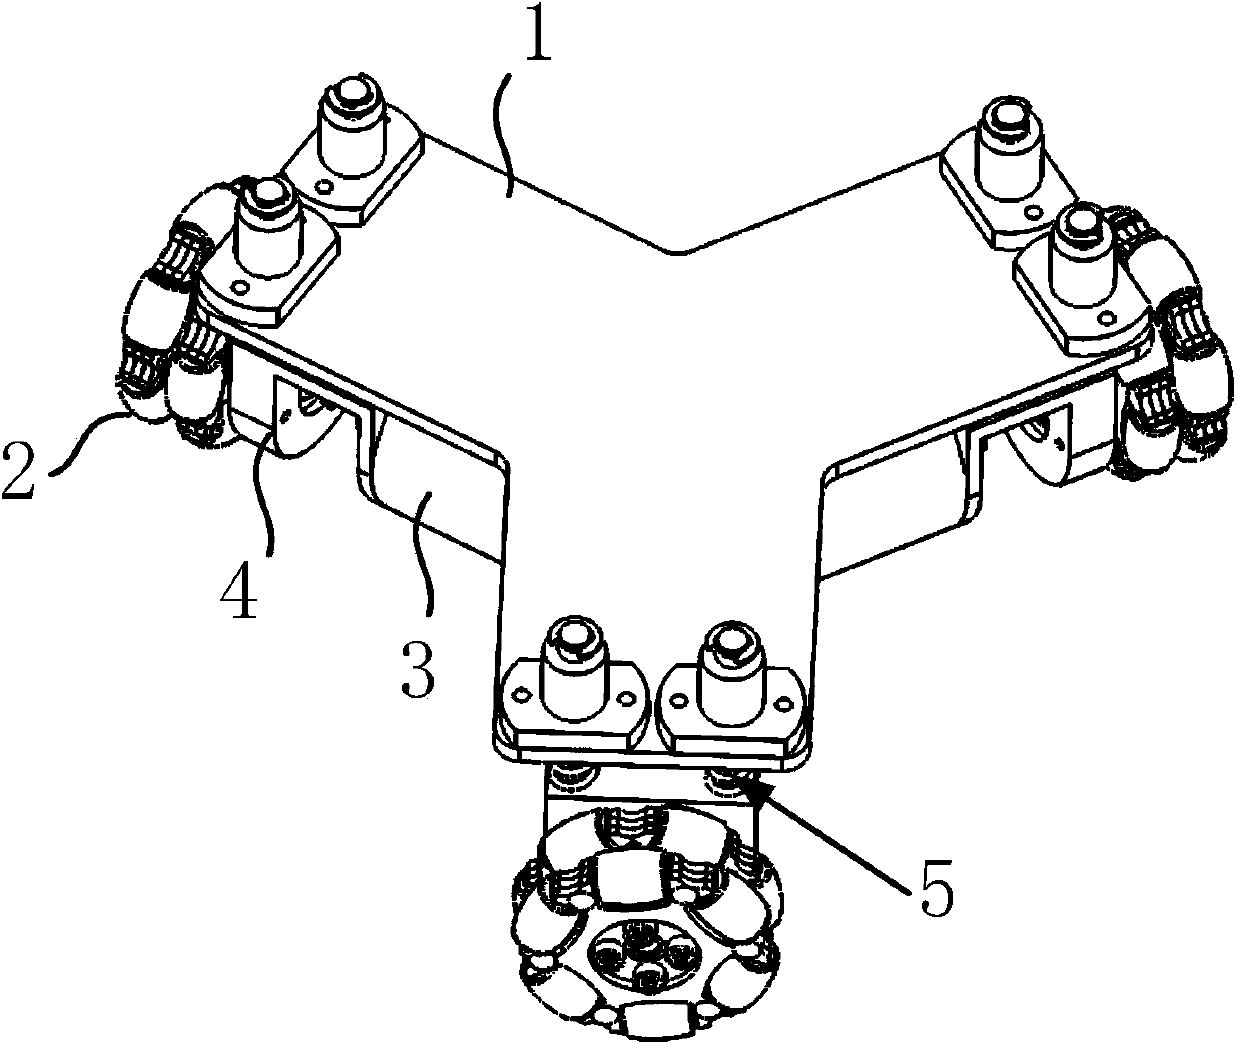 Three-wheel planar position finder